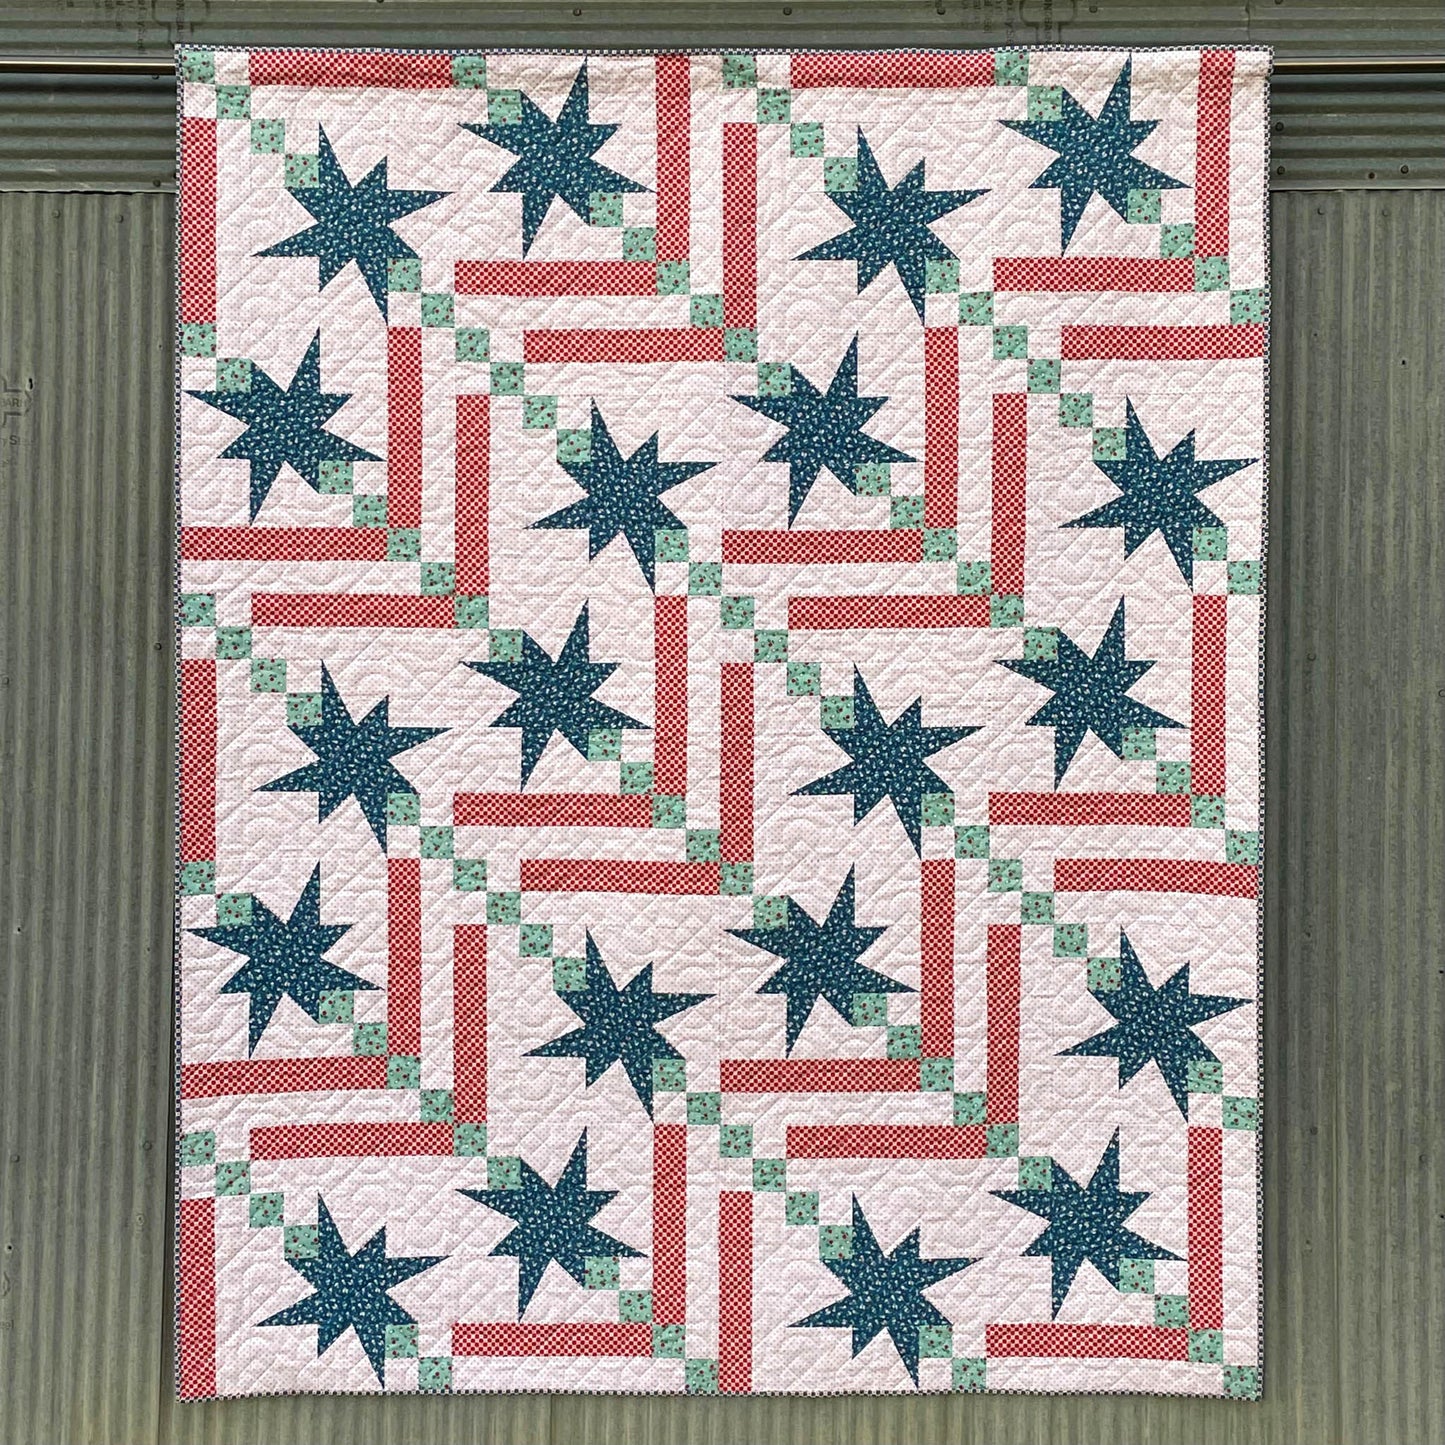 Valiant Digital Quilt Pattern